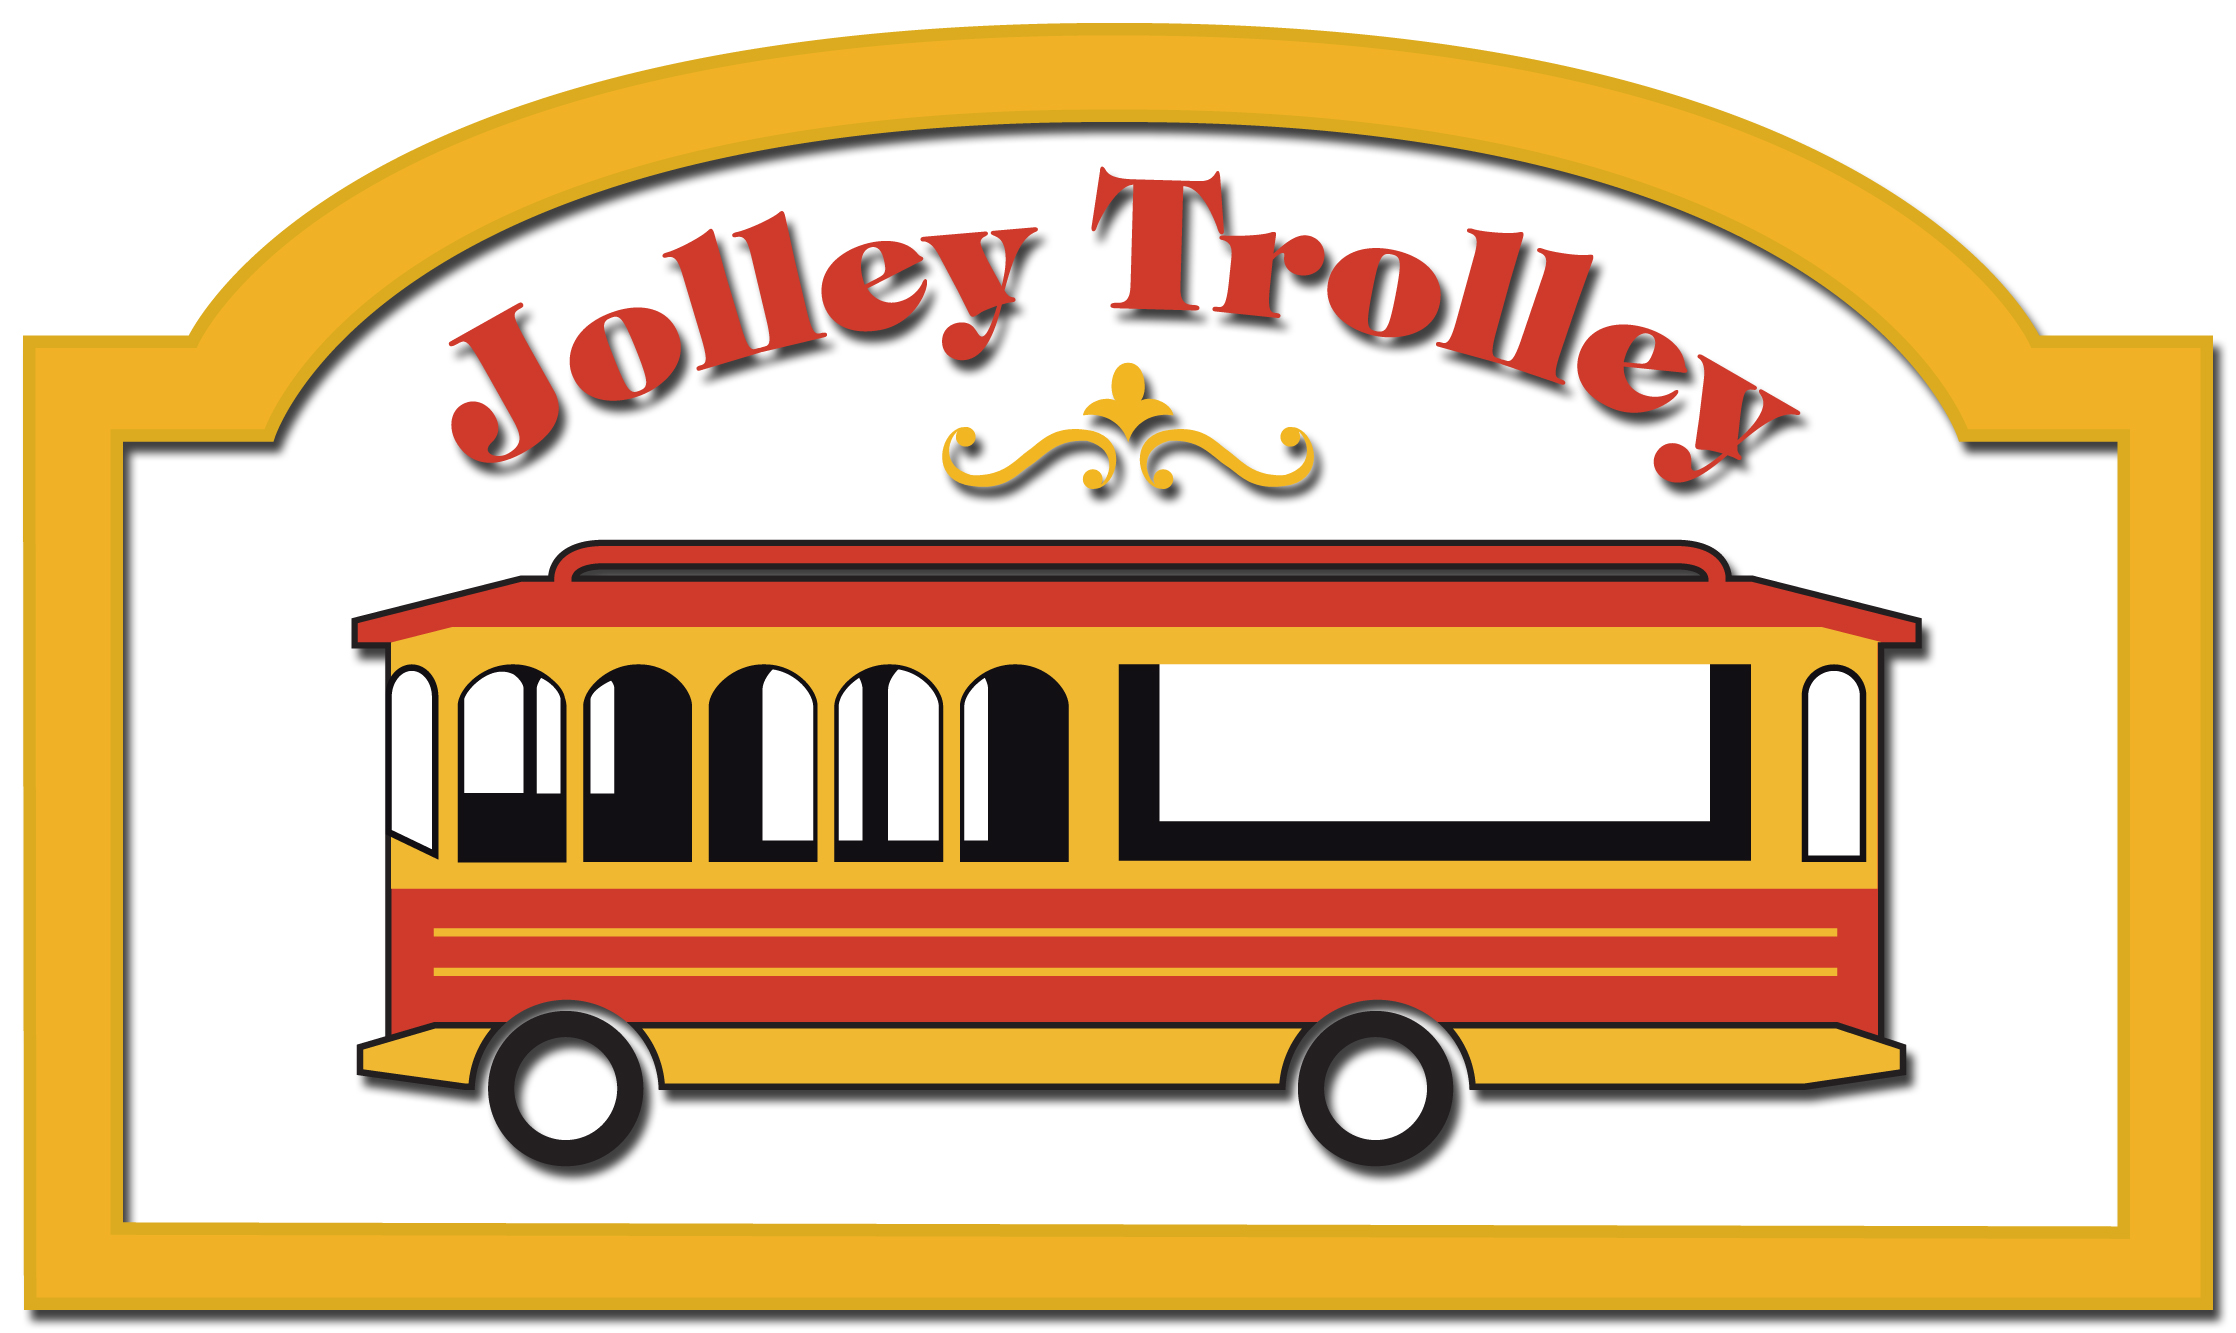 Jolley Trolley 